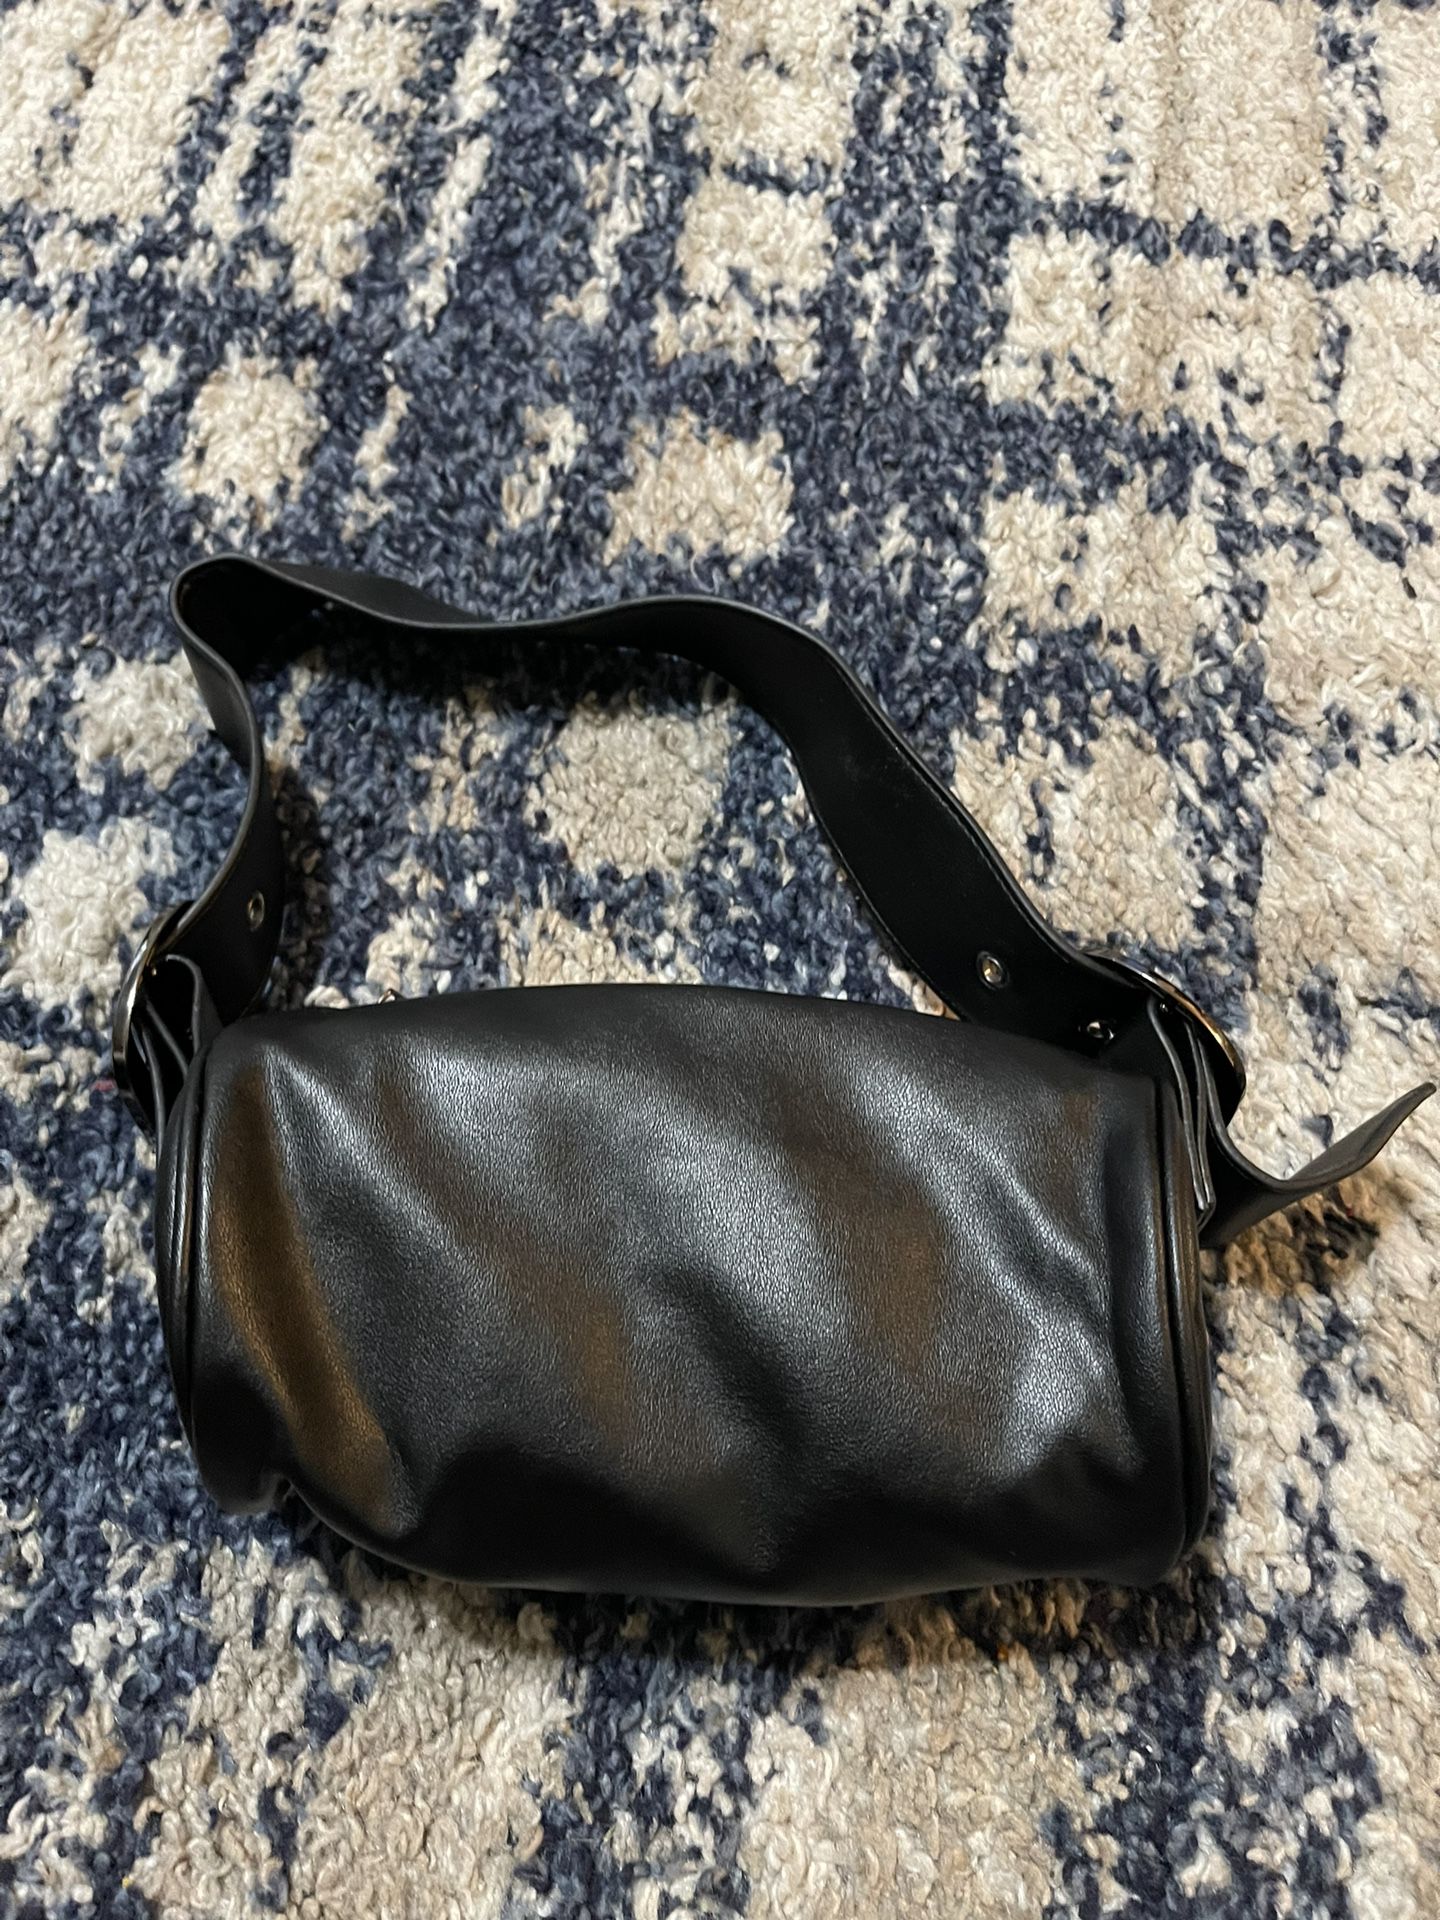 Womens small handbag 